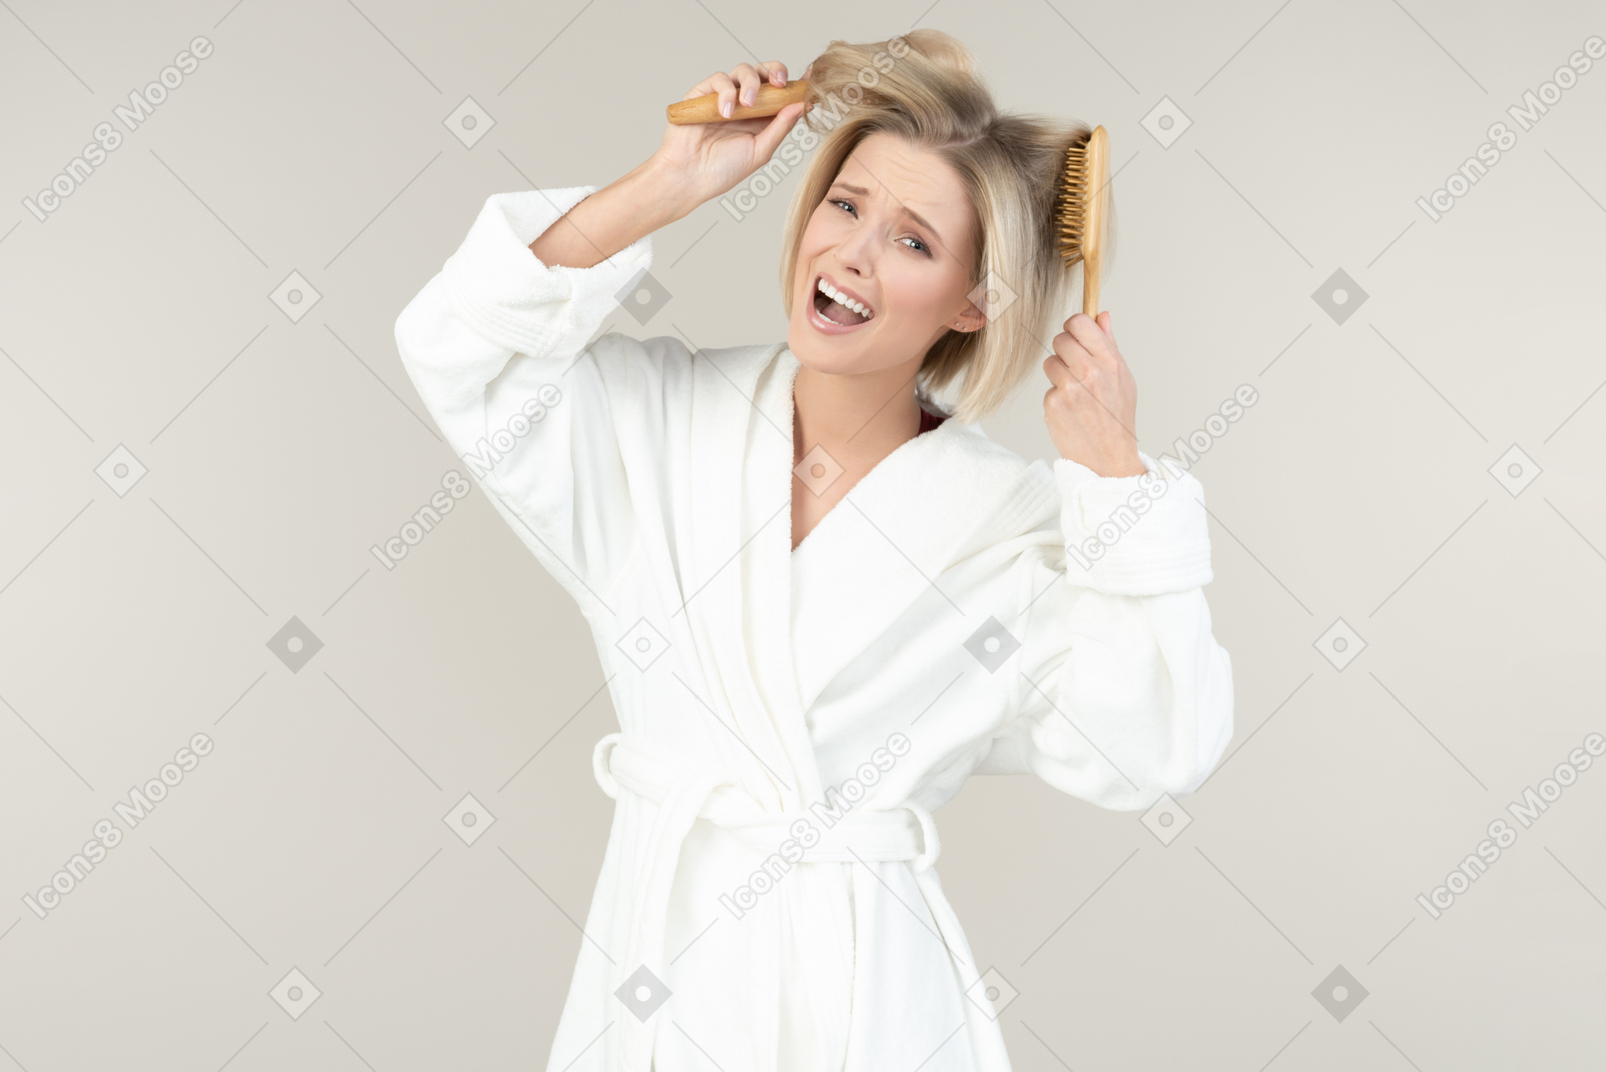 Молодая блондинка в белом халате позирует со всеми видами туалетных принадлежностей